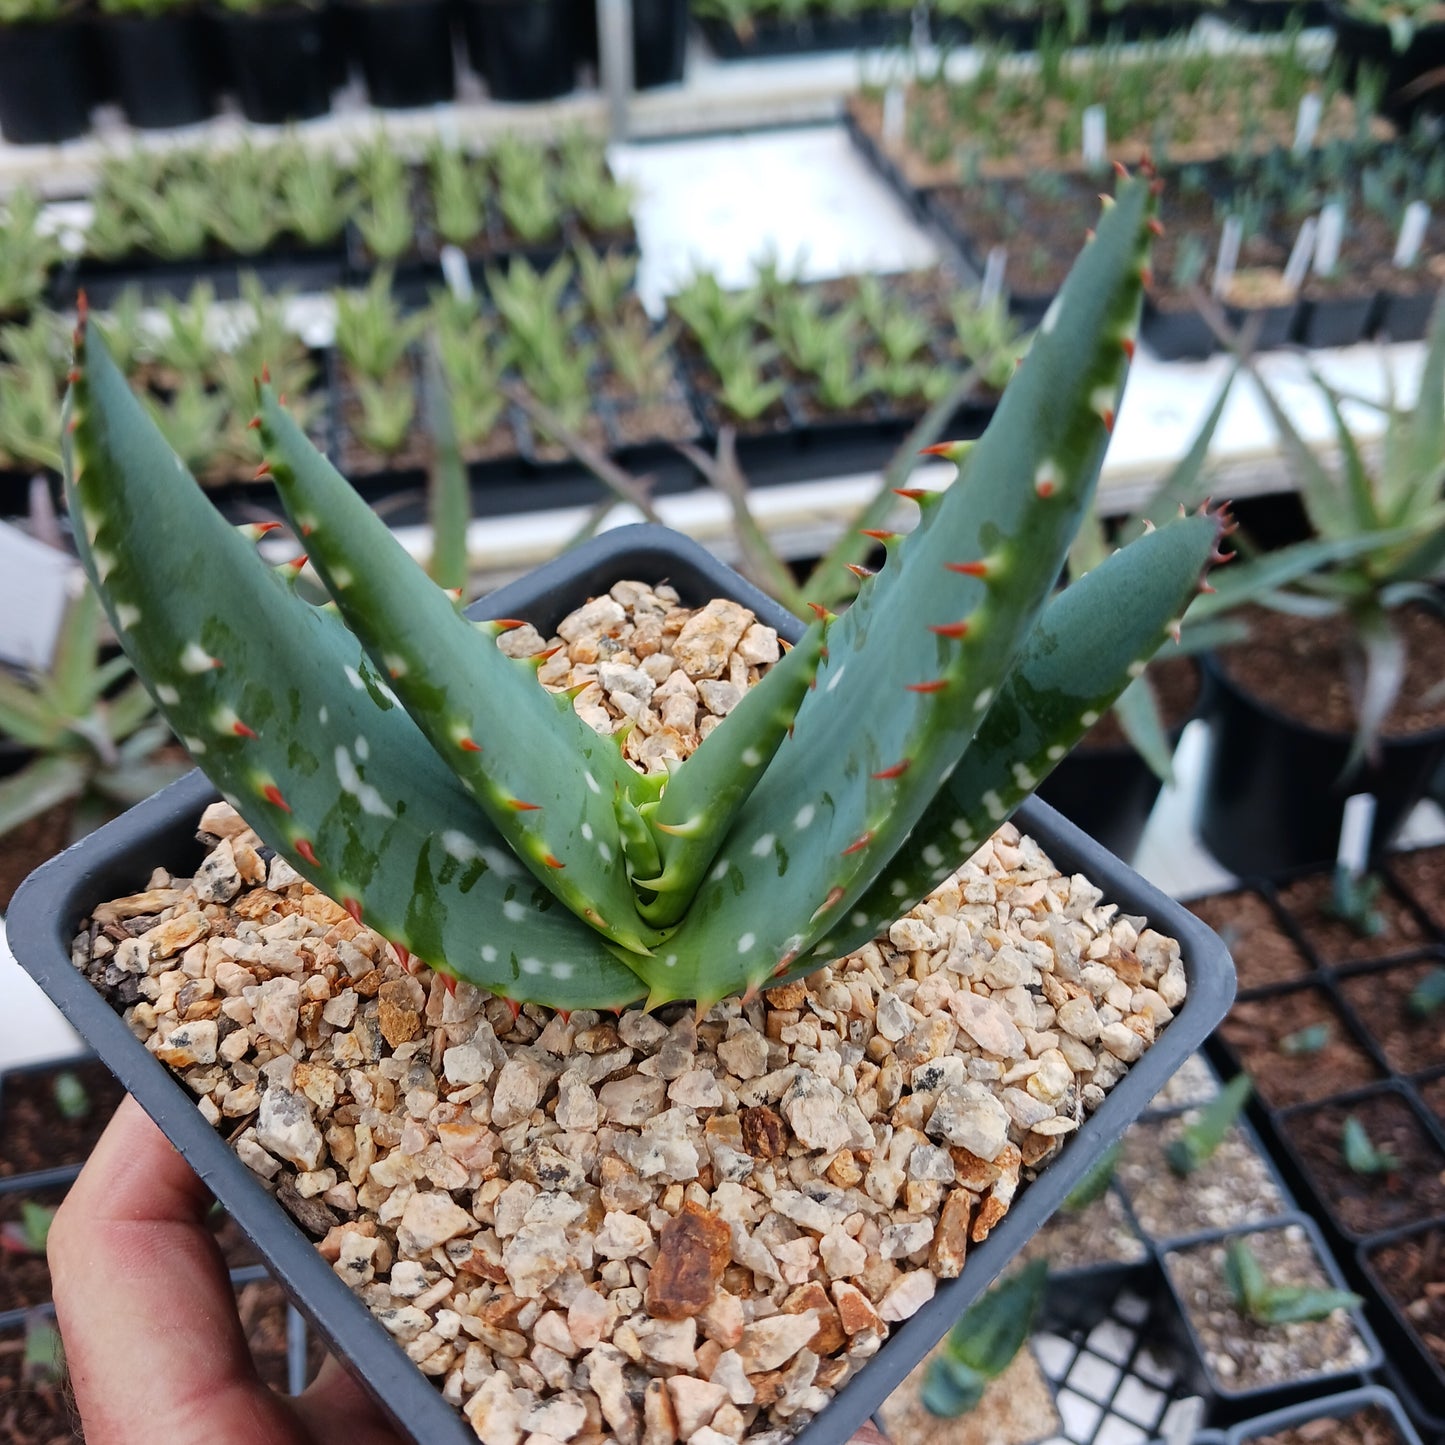 Aloe microstigma - 4in